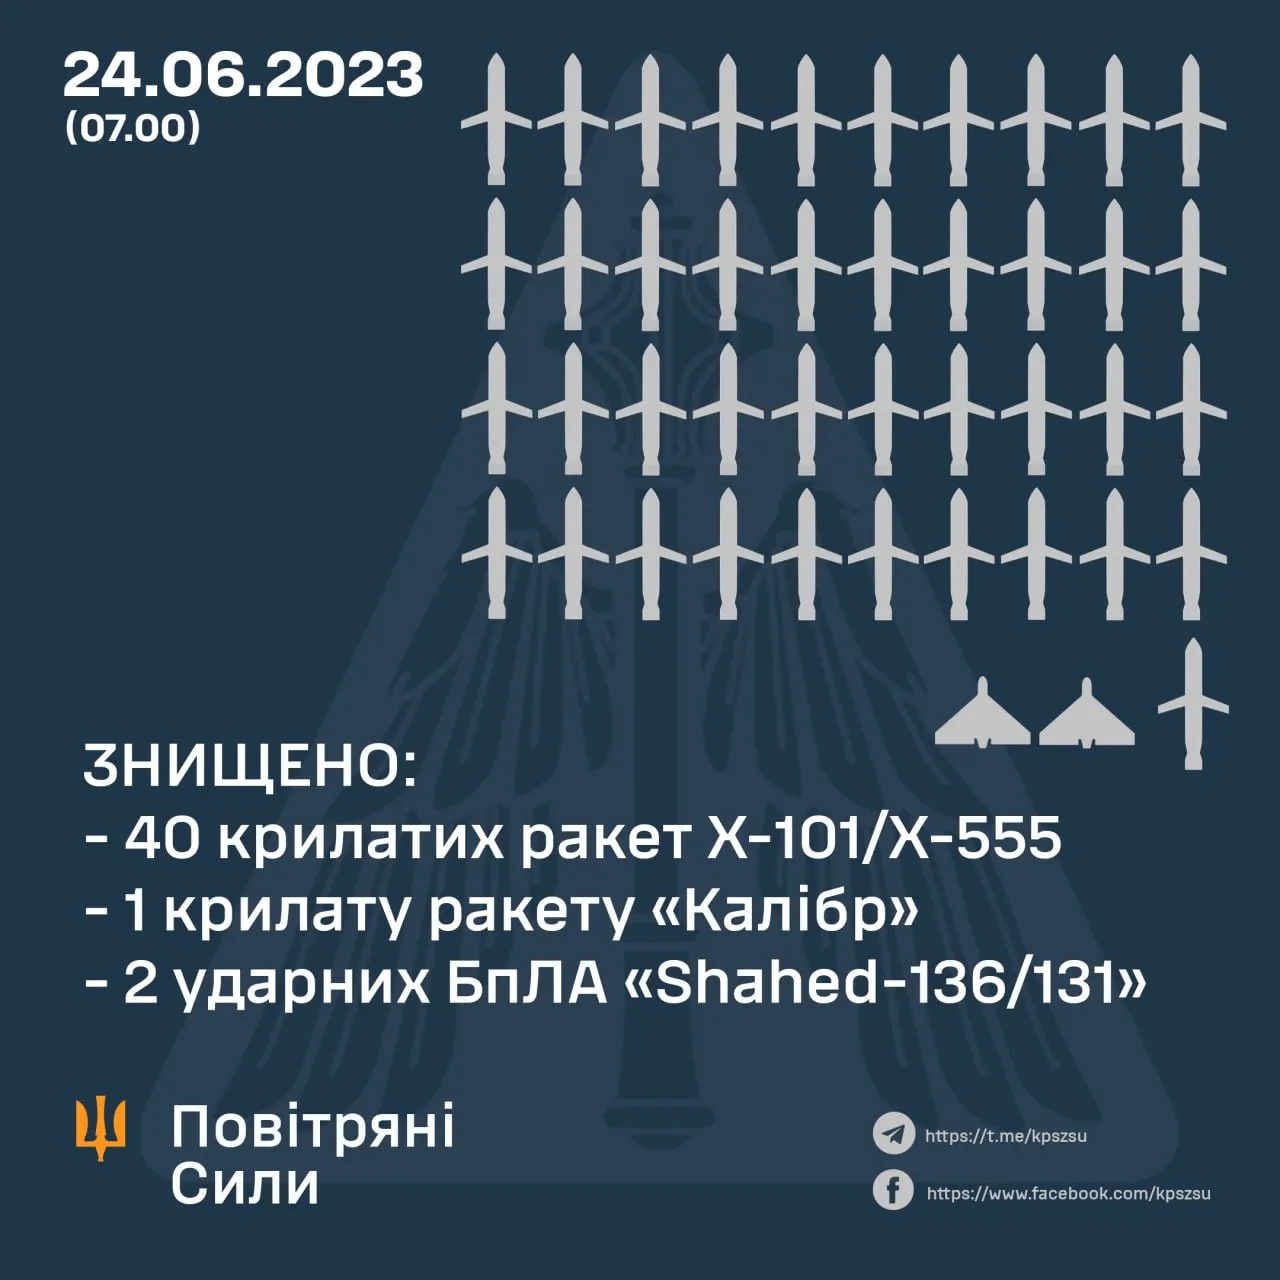 Сколько ракет удалось сбить во время атаки 24 июня